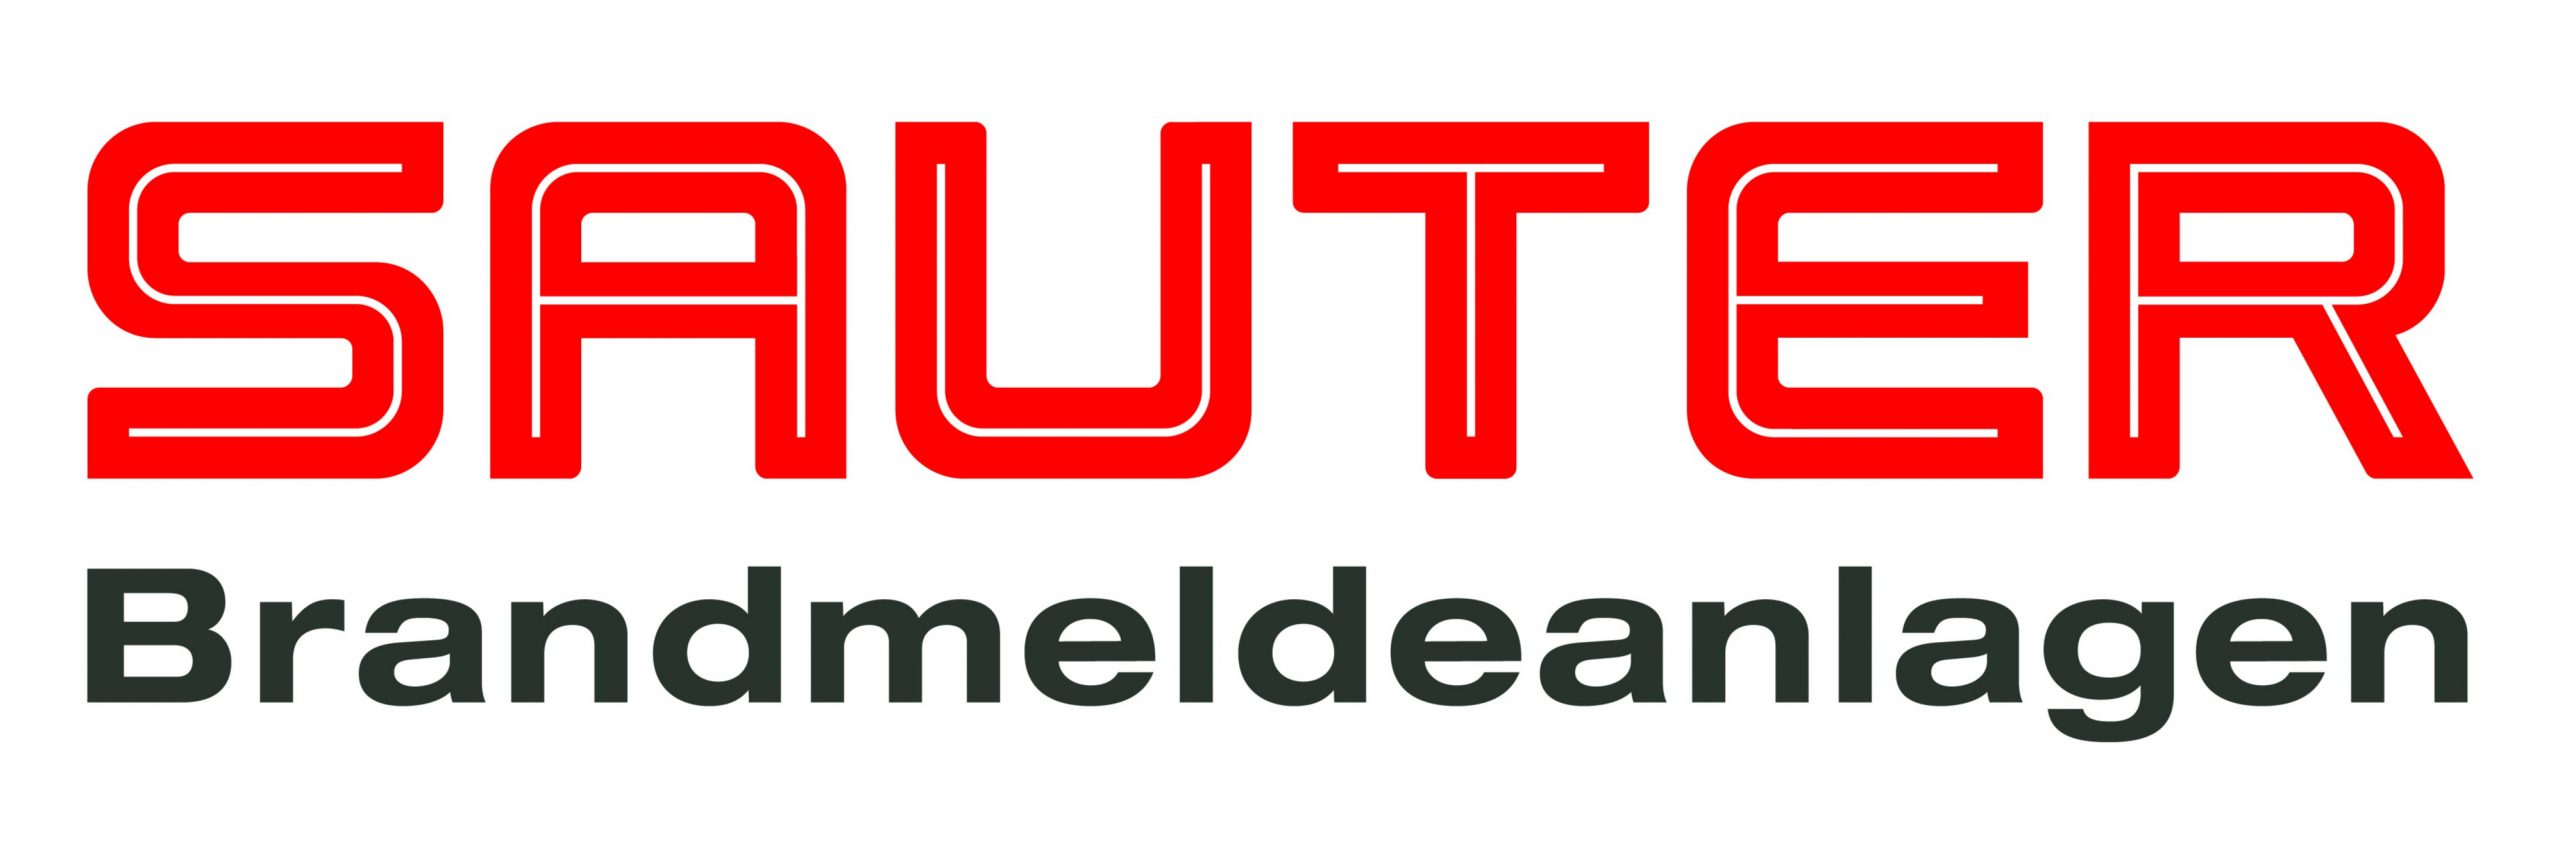 Sauter Brandmeldeanlagen GmbH